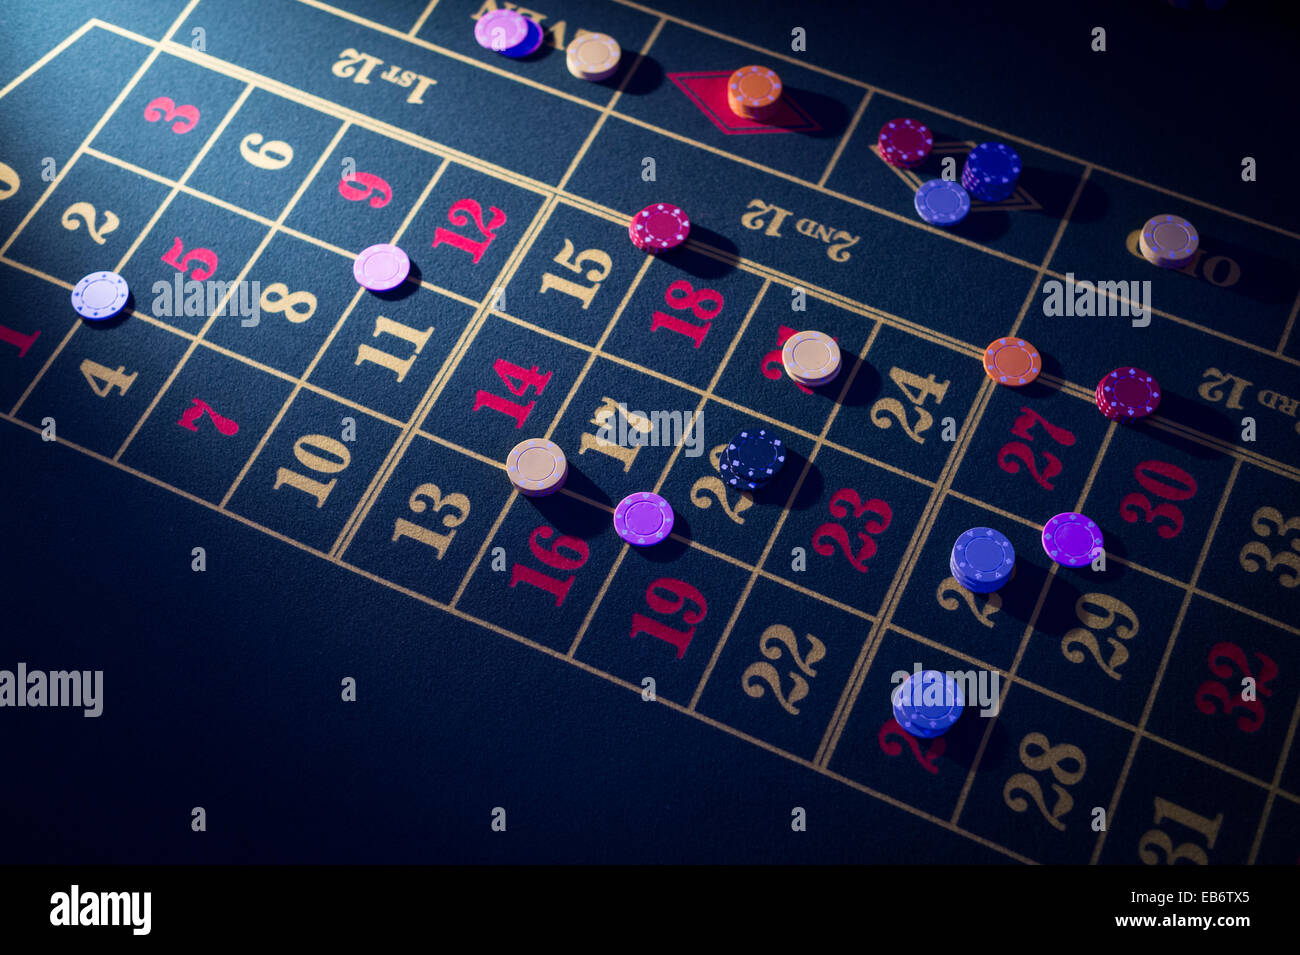 Menschen spielen beim Roulette Glücksspiel in einem "Casino" bei einer Hochzeitsfeier, UK Stockfoto